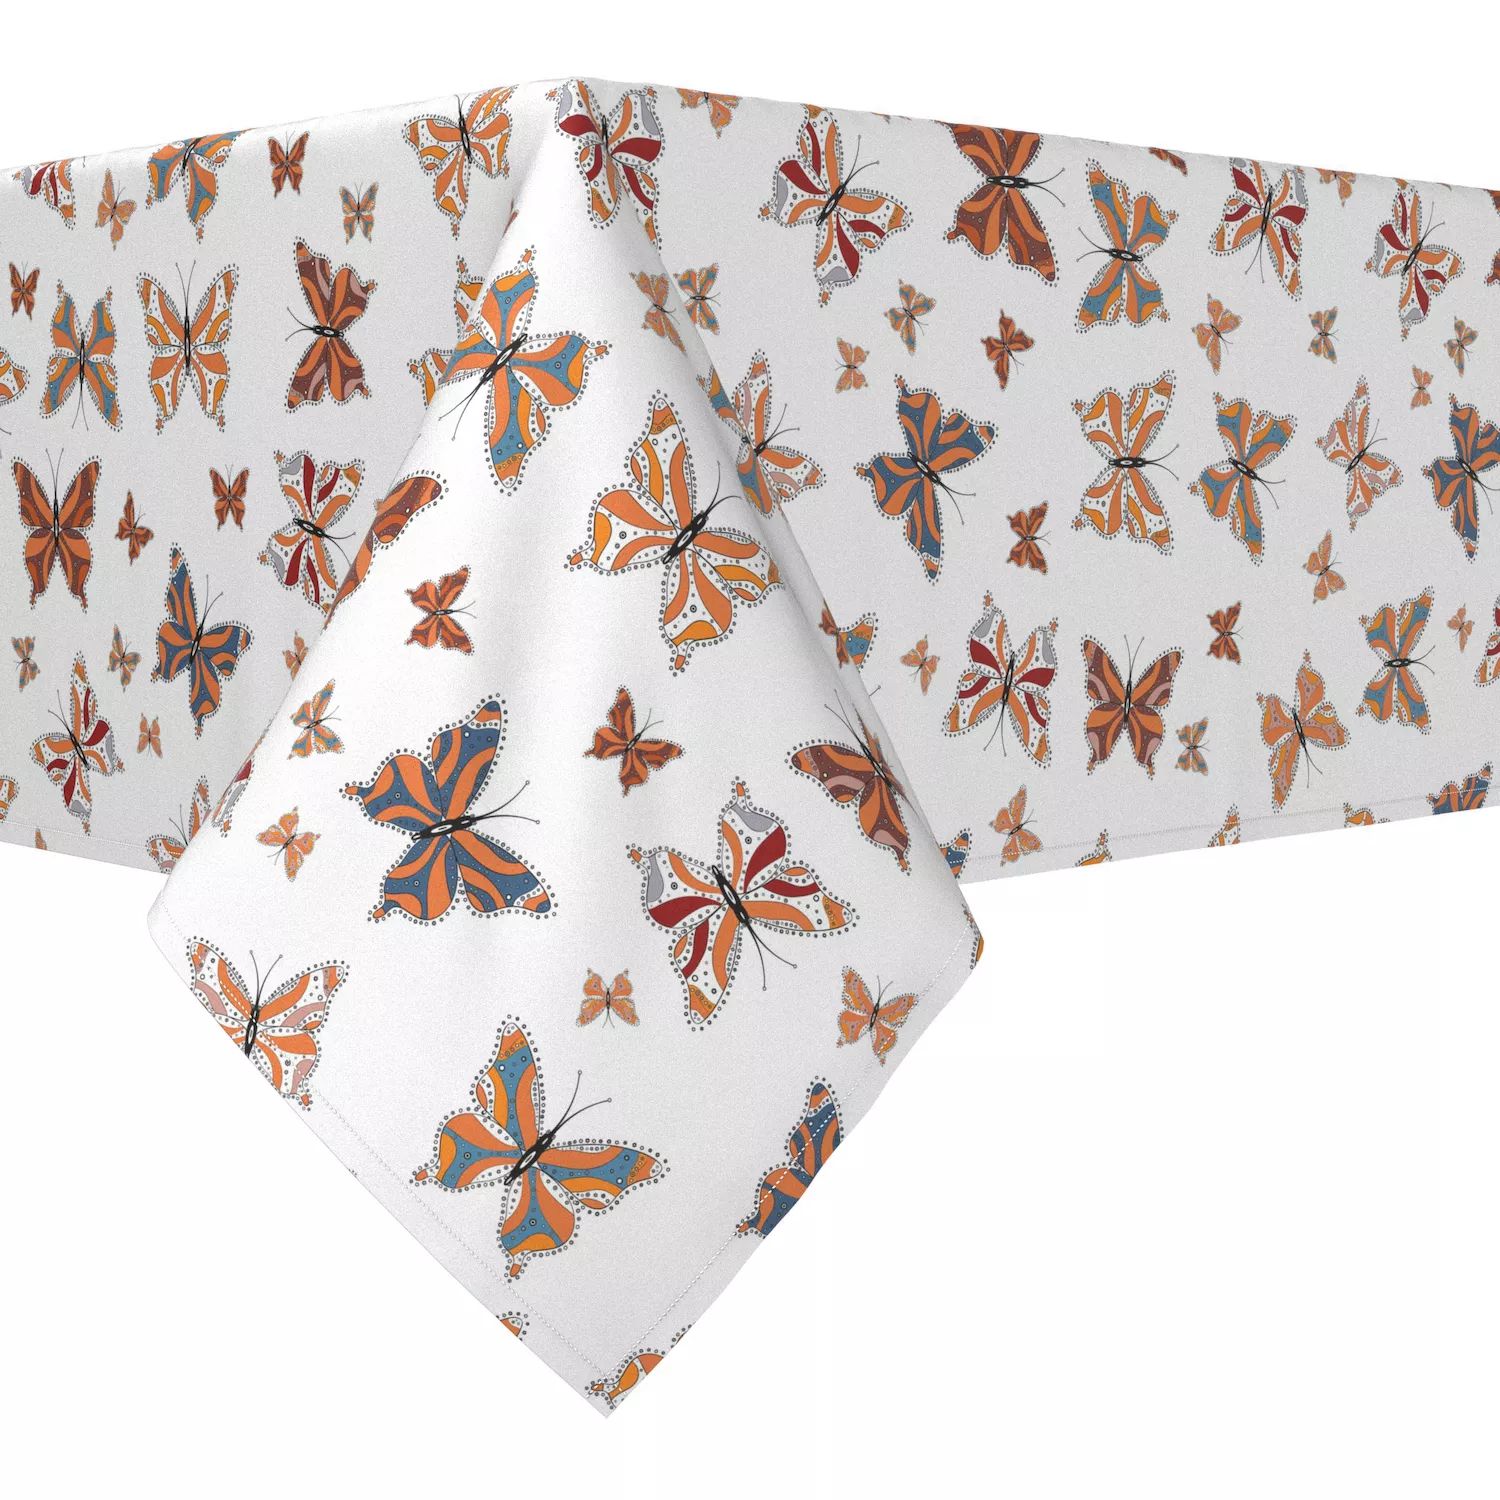 Прямоугольная скатерть, 100 % полиэстер, 60x120 дюймов, винтажные узоры в виде бабочек. закладки винтажные декоративные в виде бабочек 30 шт